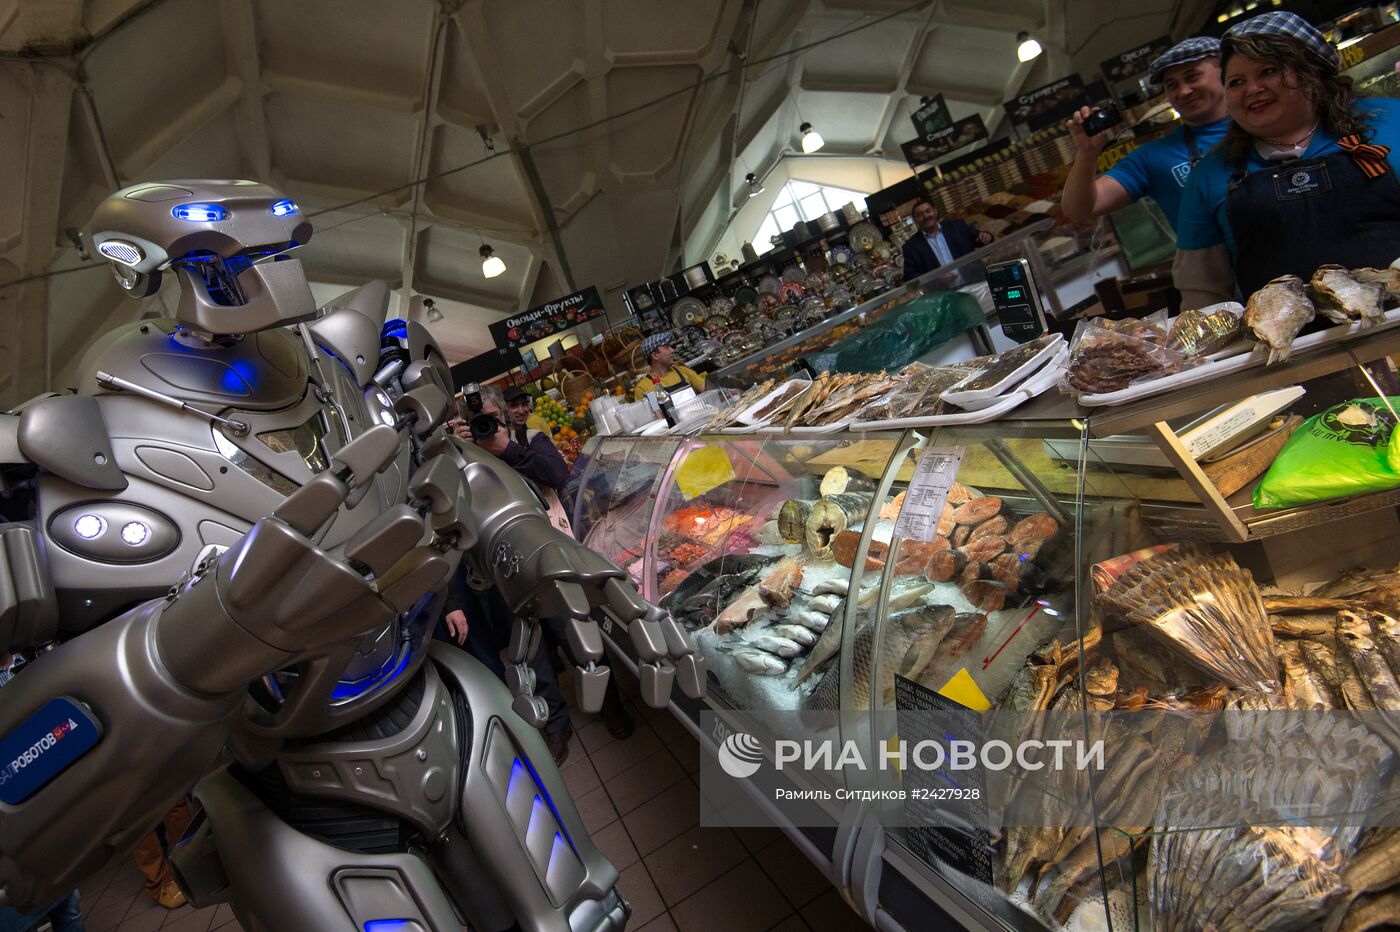 Робот "Титан" посетил Даниловский рынок в Москве